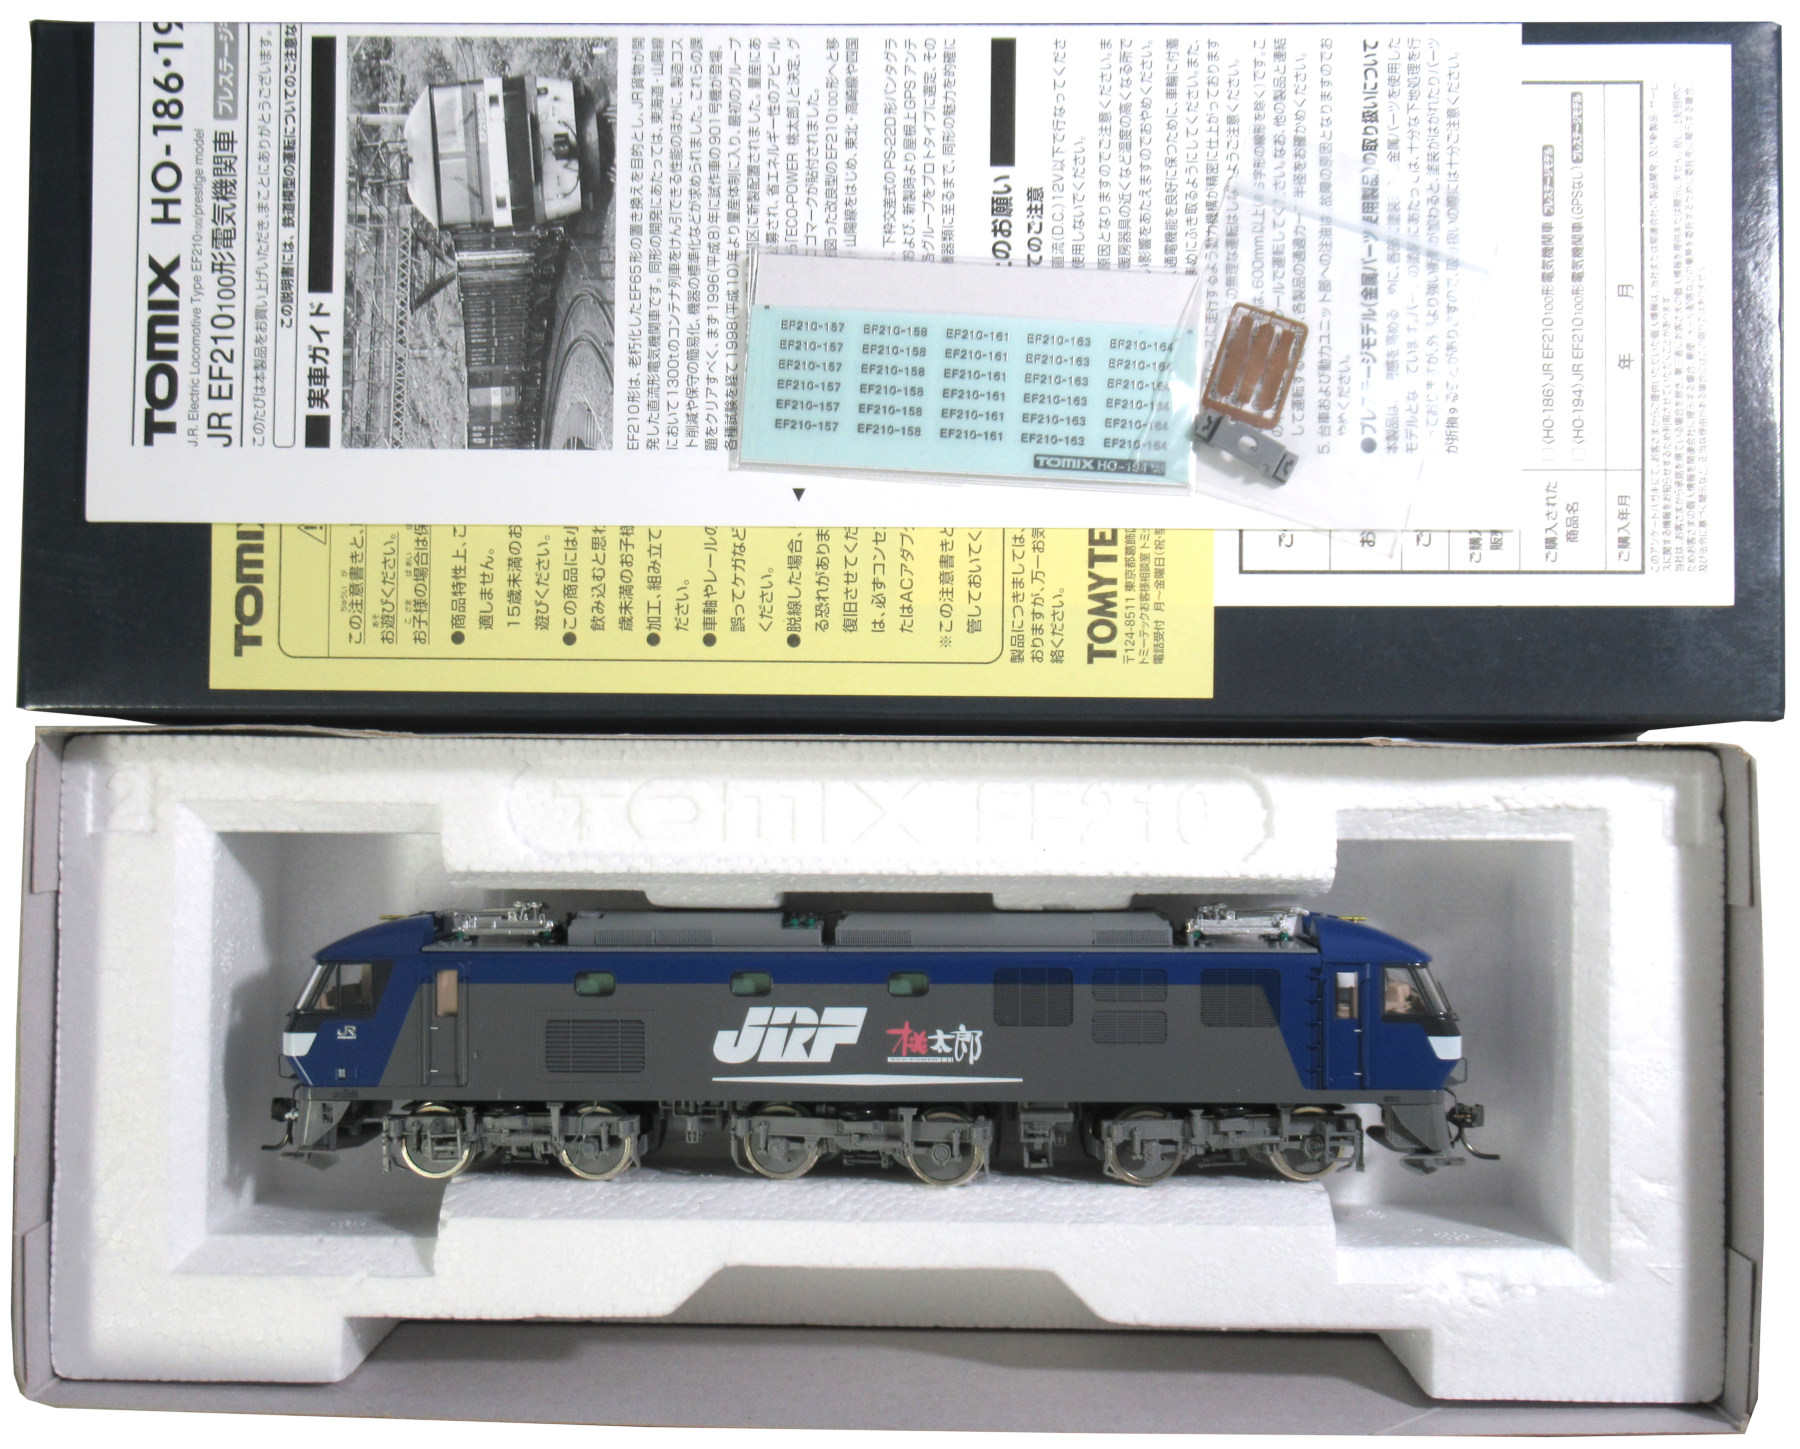 高品質新品TOMIX HO-186 JR EF210 100形 電気機関車 プレステージモデル HOゲージ 鉄道模型 中古 良好 M6430326 機関車